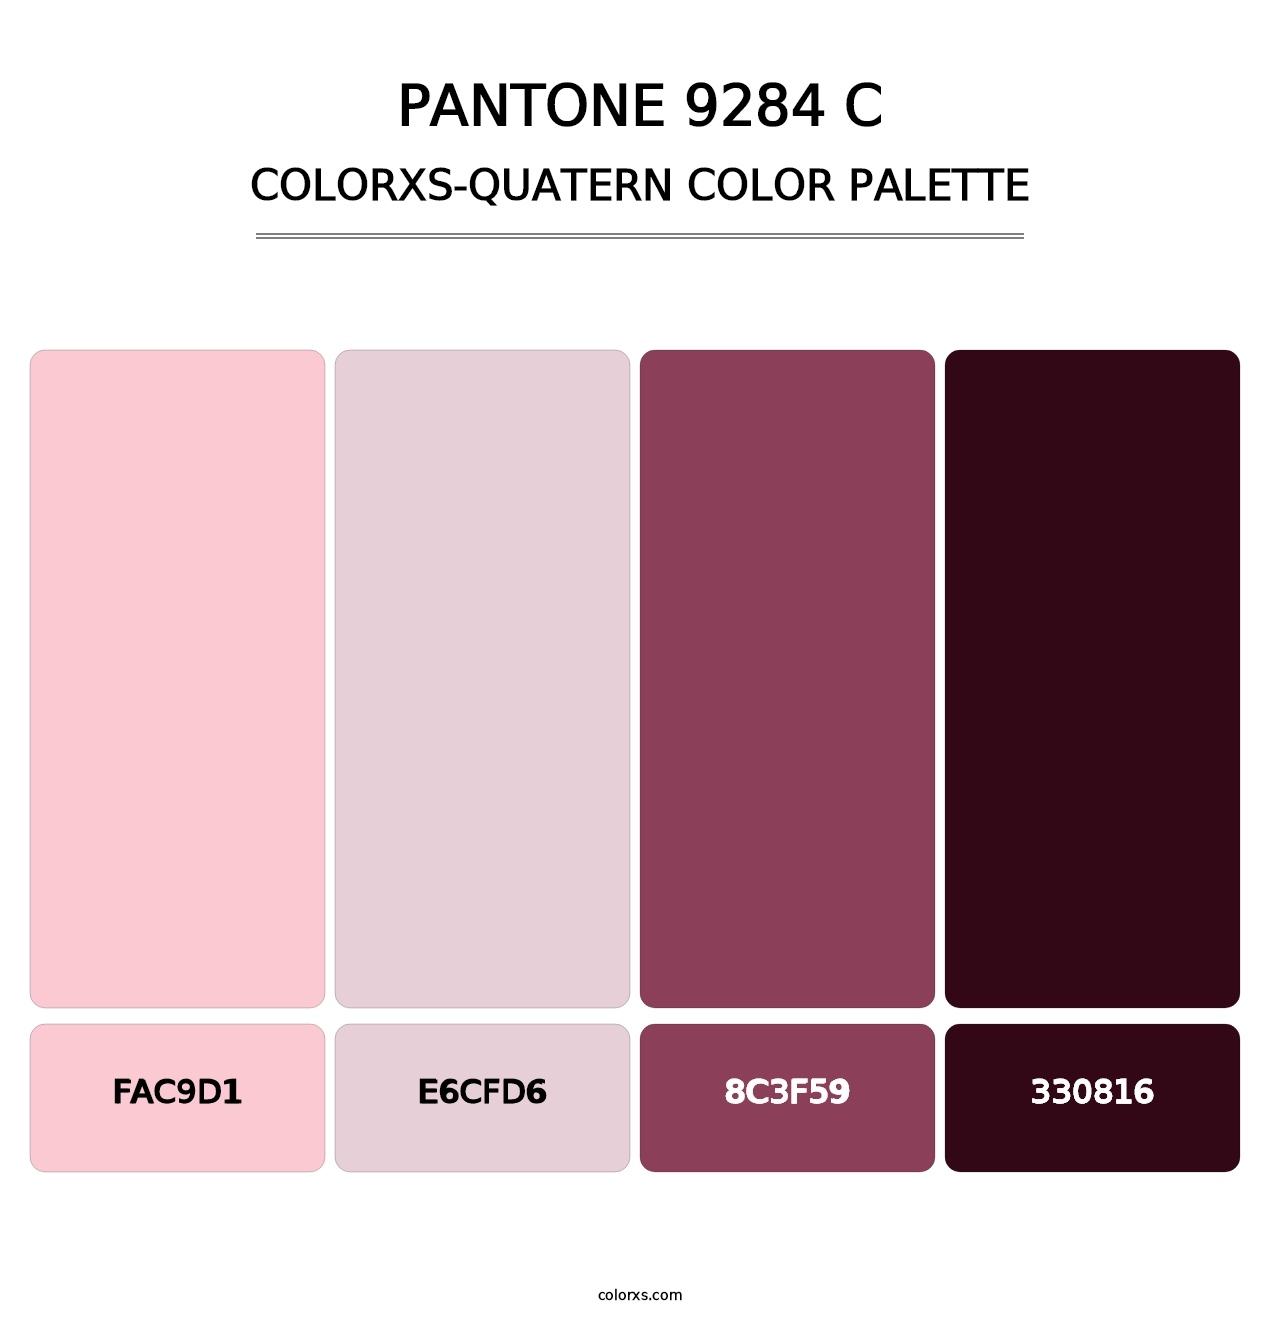 PANTONE 9284 C - Colorxs Quatern Palette